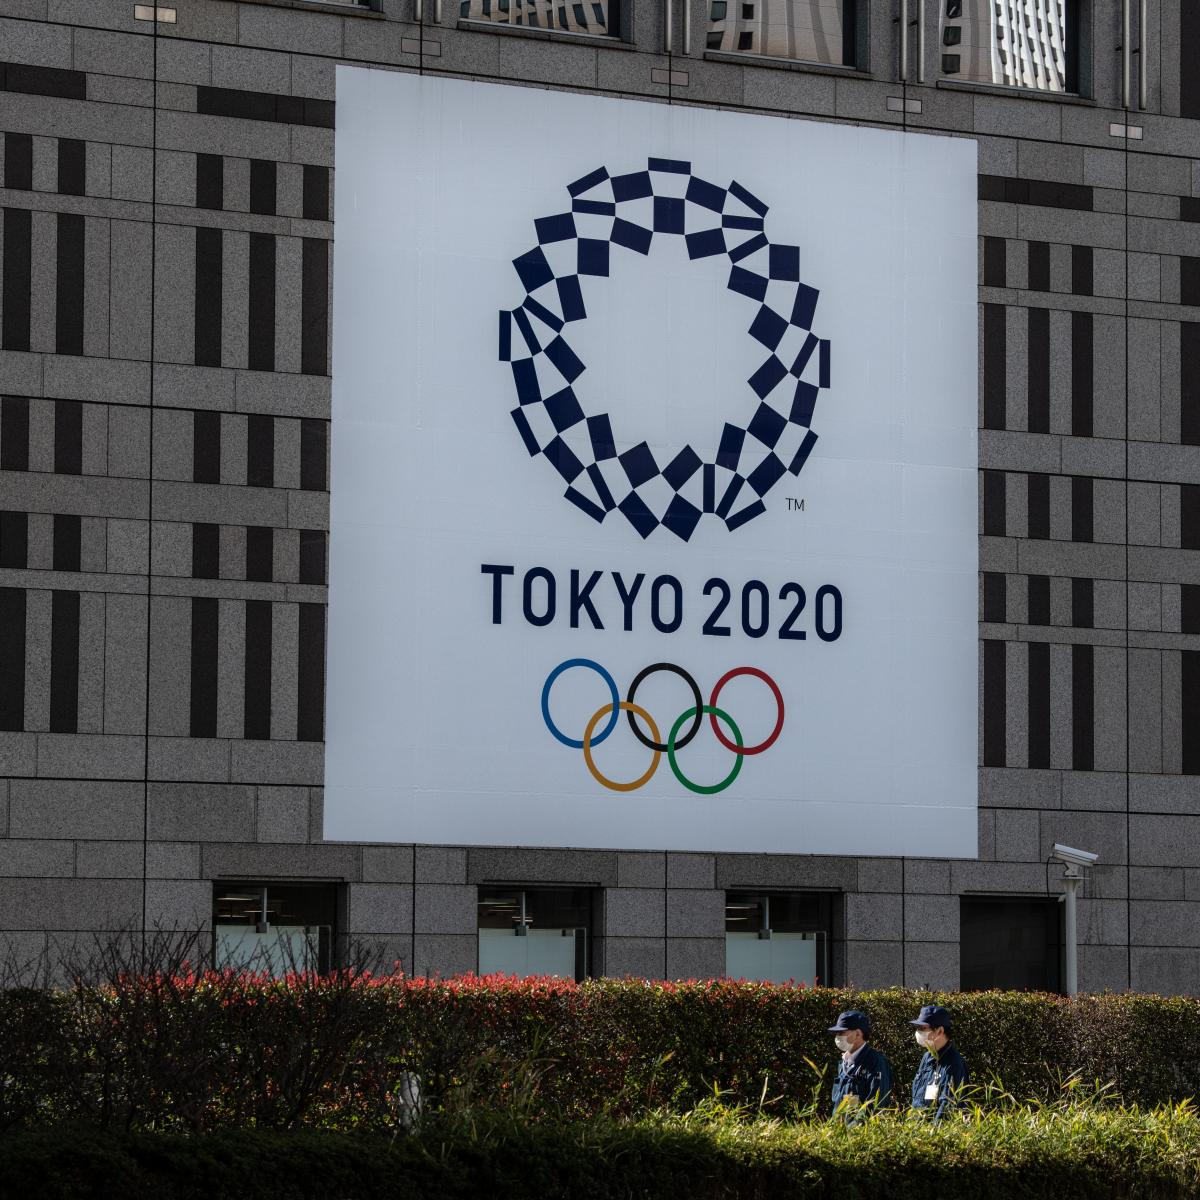 2020 Tokyo Olympics Will Be Postponed Due to Coronavirus, Says IOC's Dick Pound